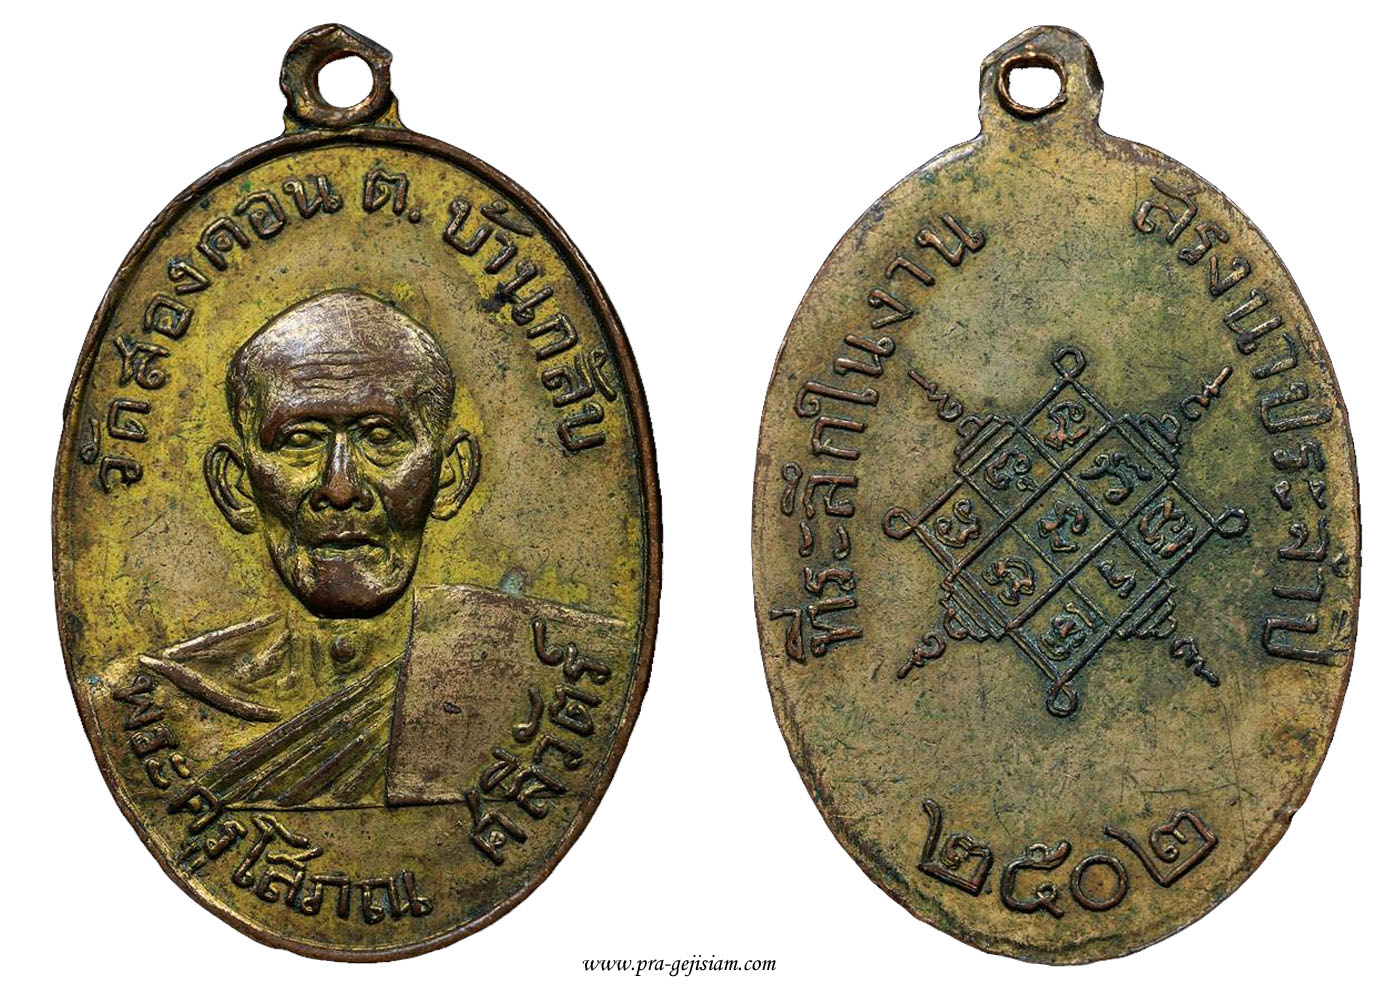 เหรียญรุ่นแรก  ของหลวงพ่อพัง จันทโชติ ปี พ.ศ 2502  